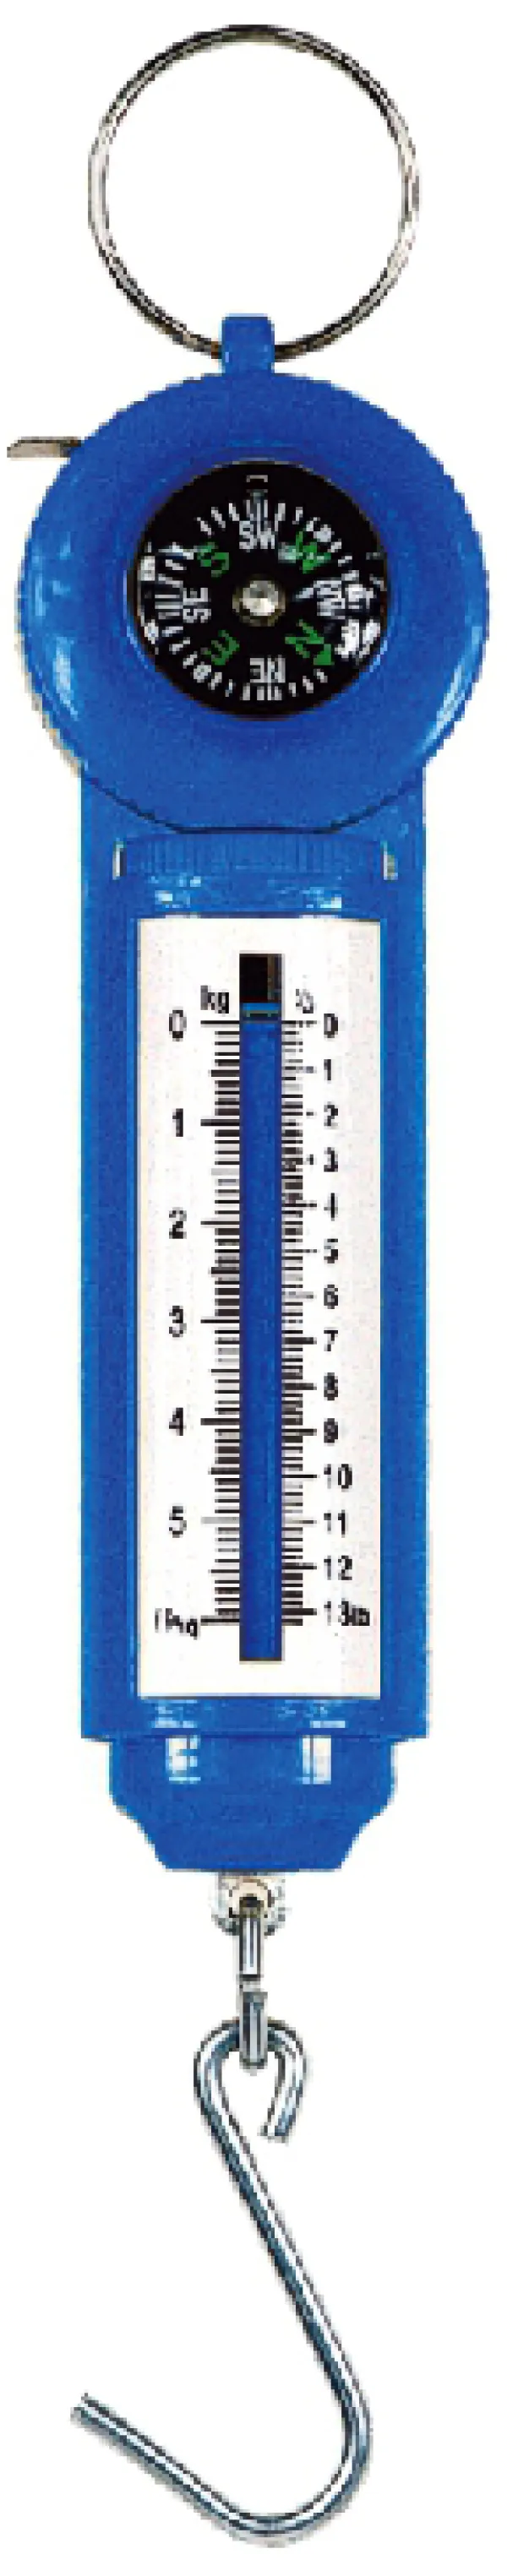 SNECI - Horgász webshop és horgászbolt - KONGER 6kg Scale with Measure And Compass